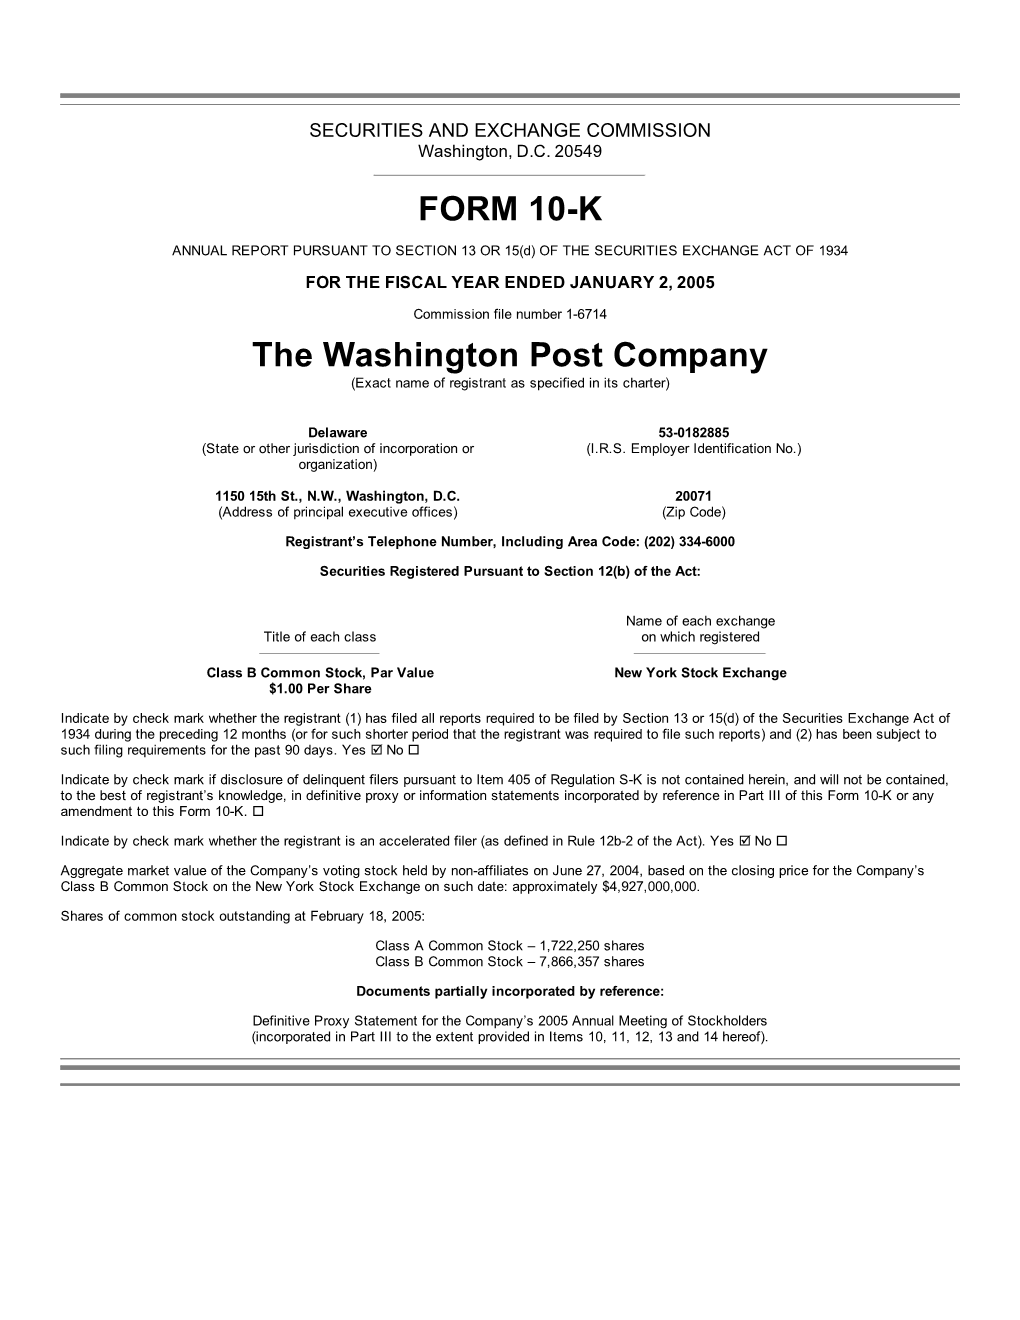 FORM 10-K the Washington Post Company